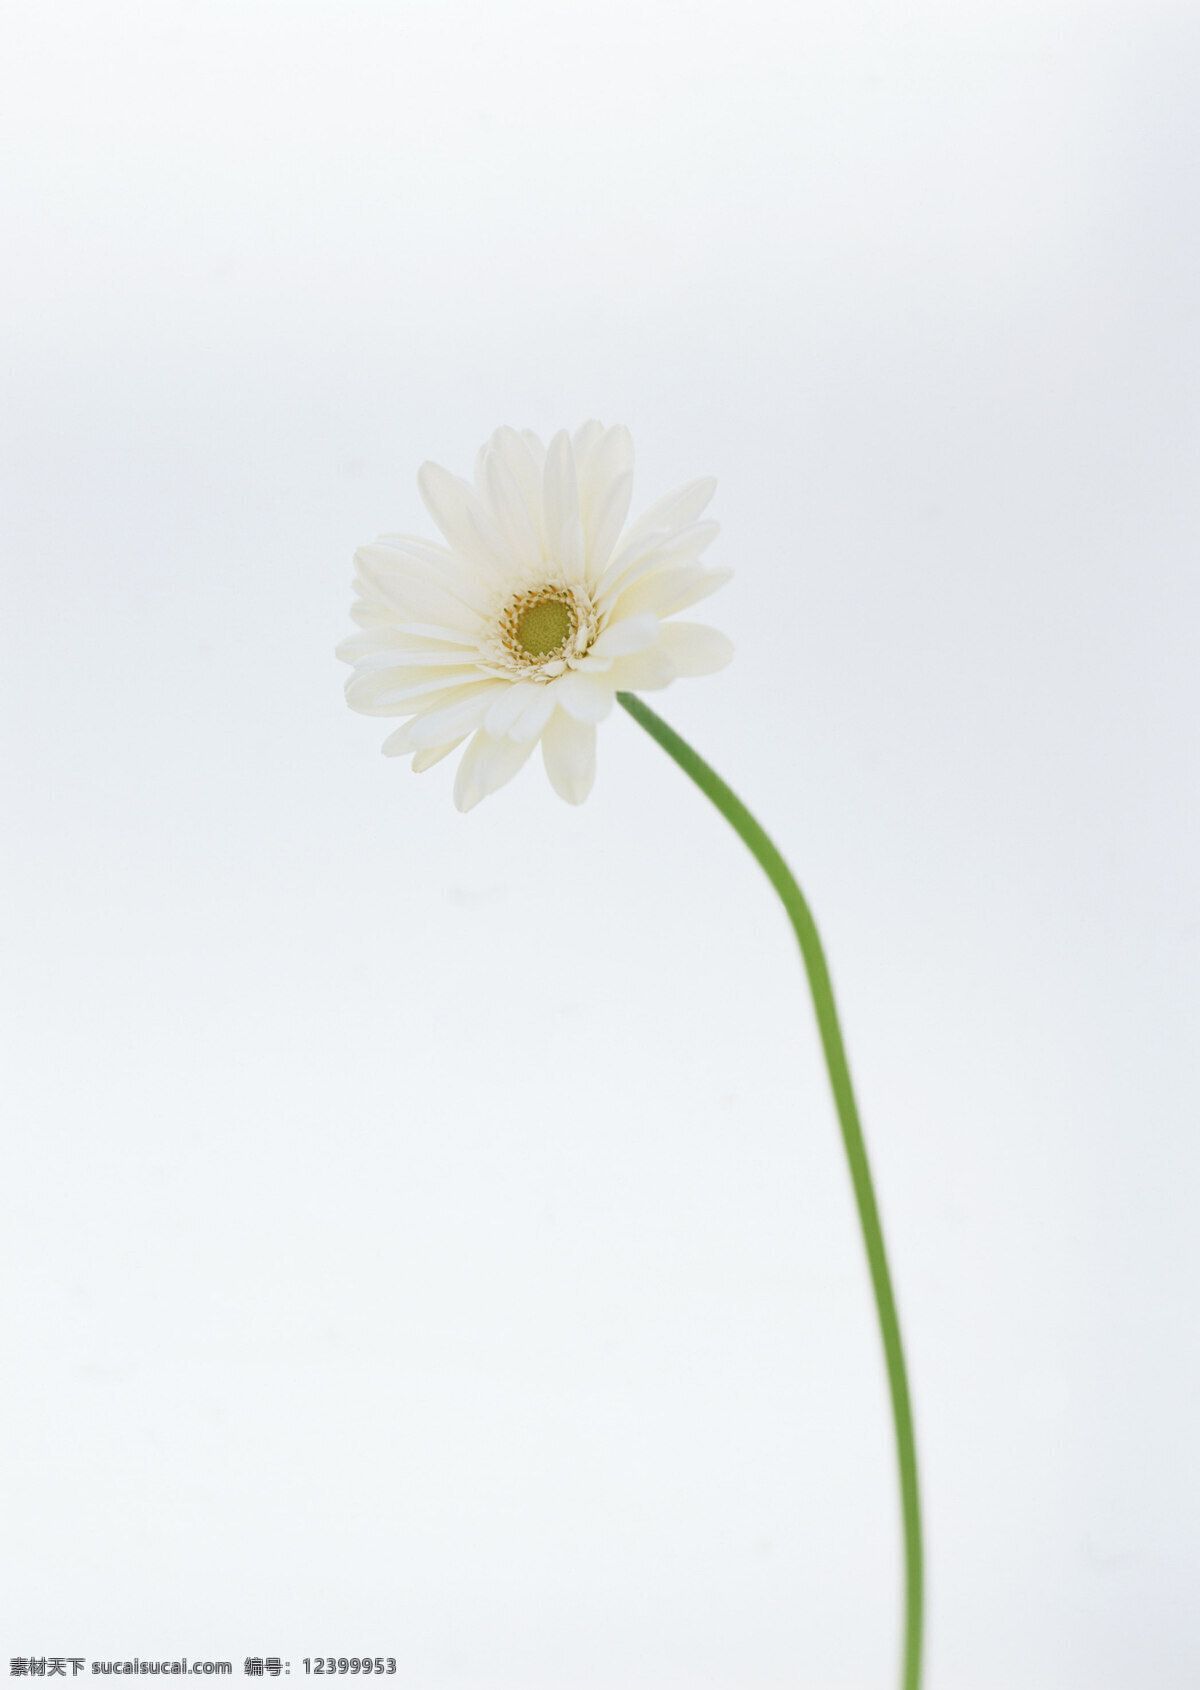 白菊花 花朵 植物 生物 白色 素净 美丽 清新 枝干 孤独 背影 花草 生物世界